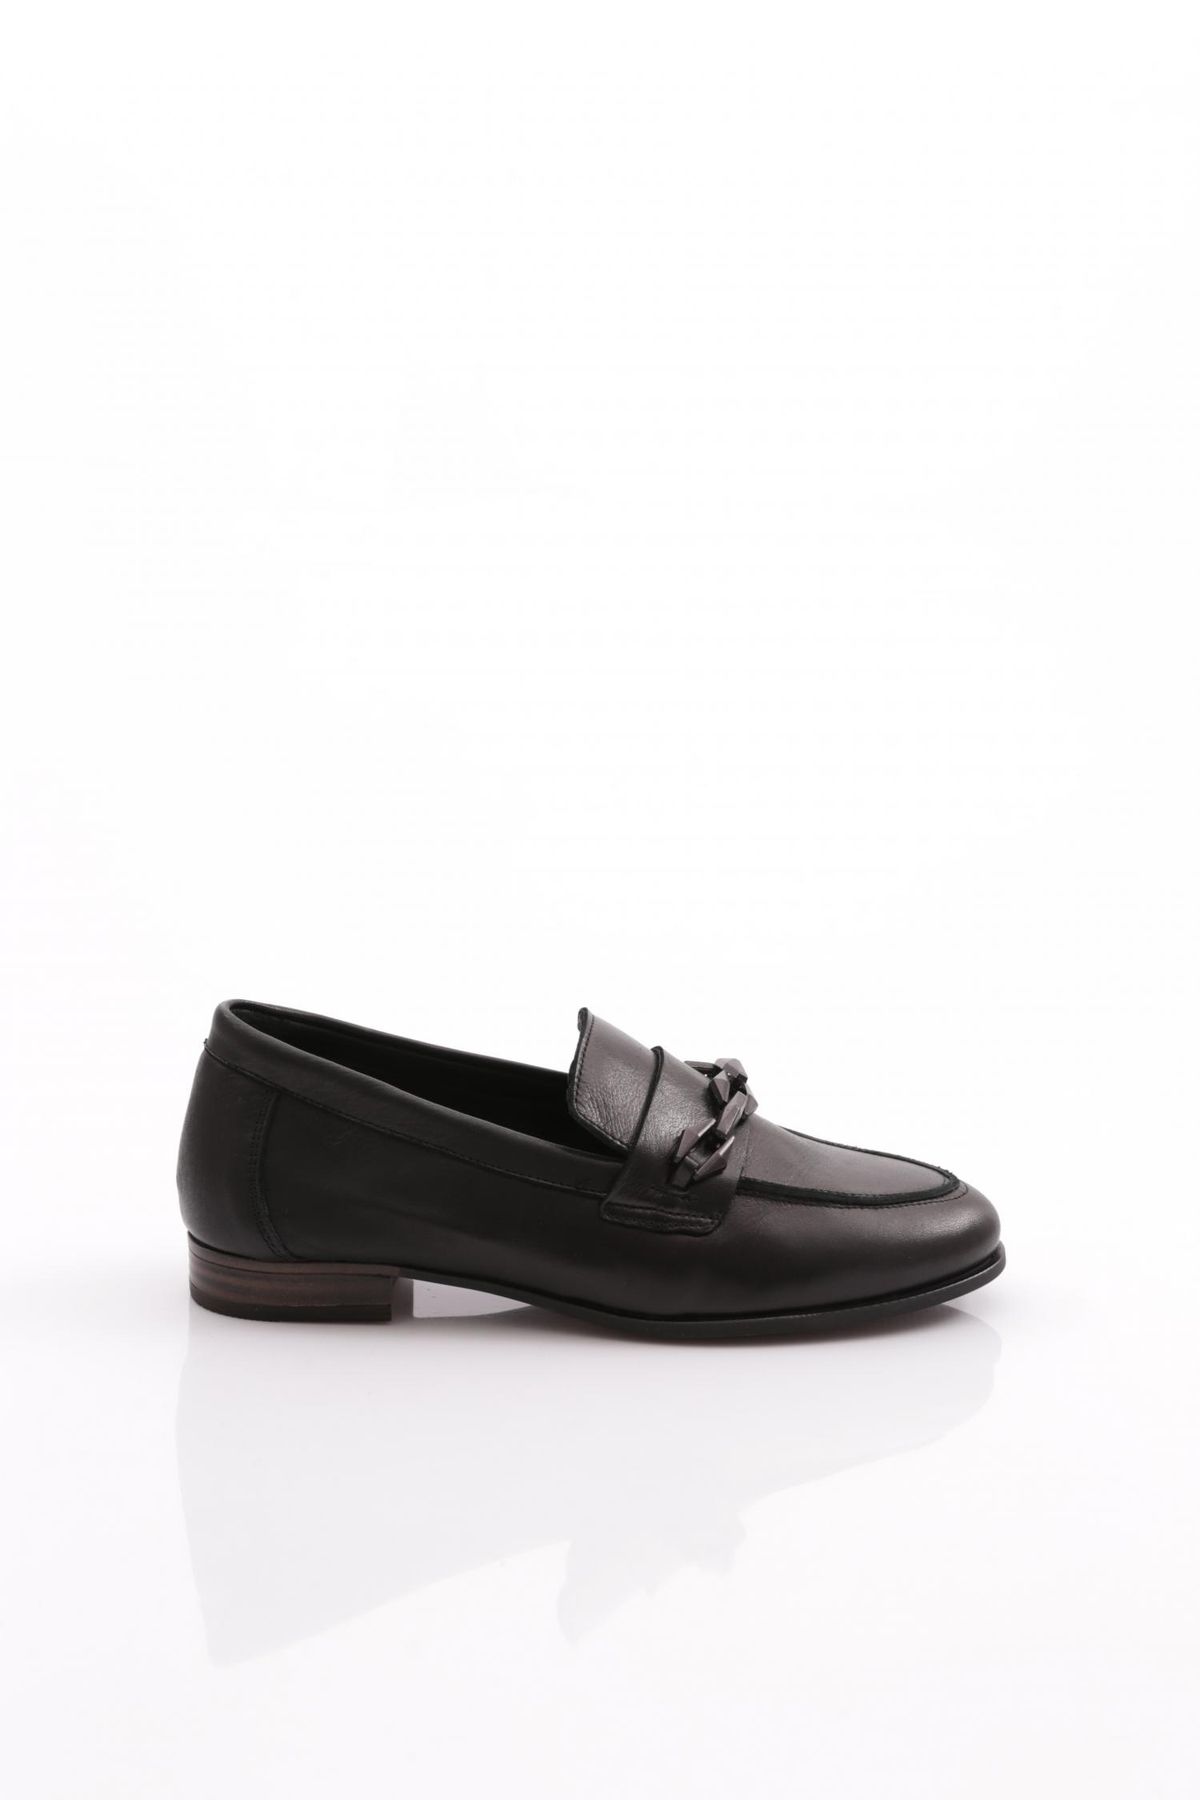 Mammamia D24ya-3215 Kadın Deri Loafer Ayakkabı